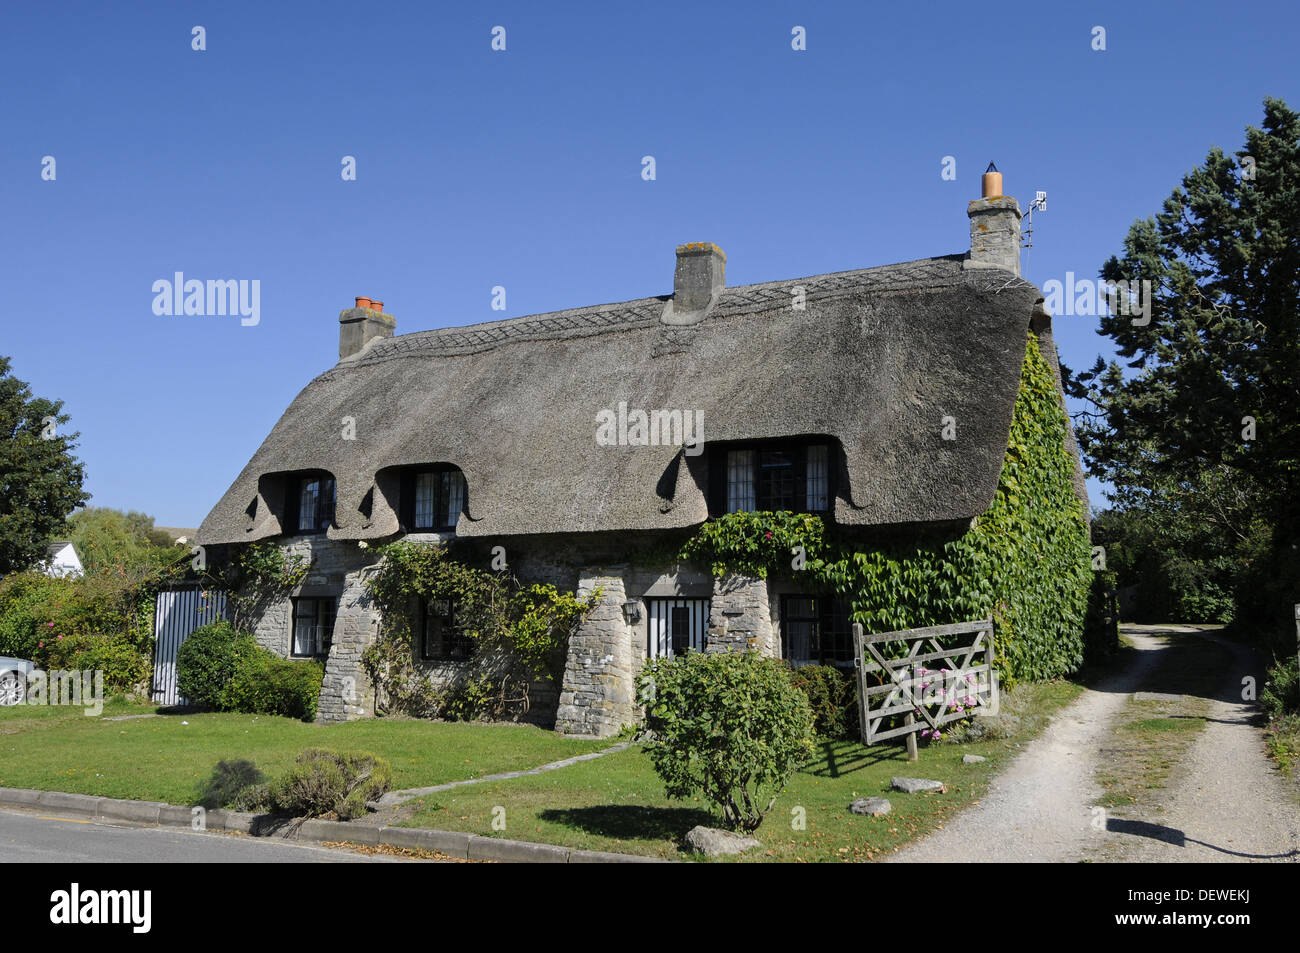 Thatched Cottage dans le village de Corfe à l'île de Purbeck Dorset Angleterre Banque D'Images